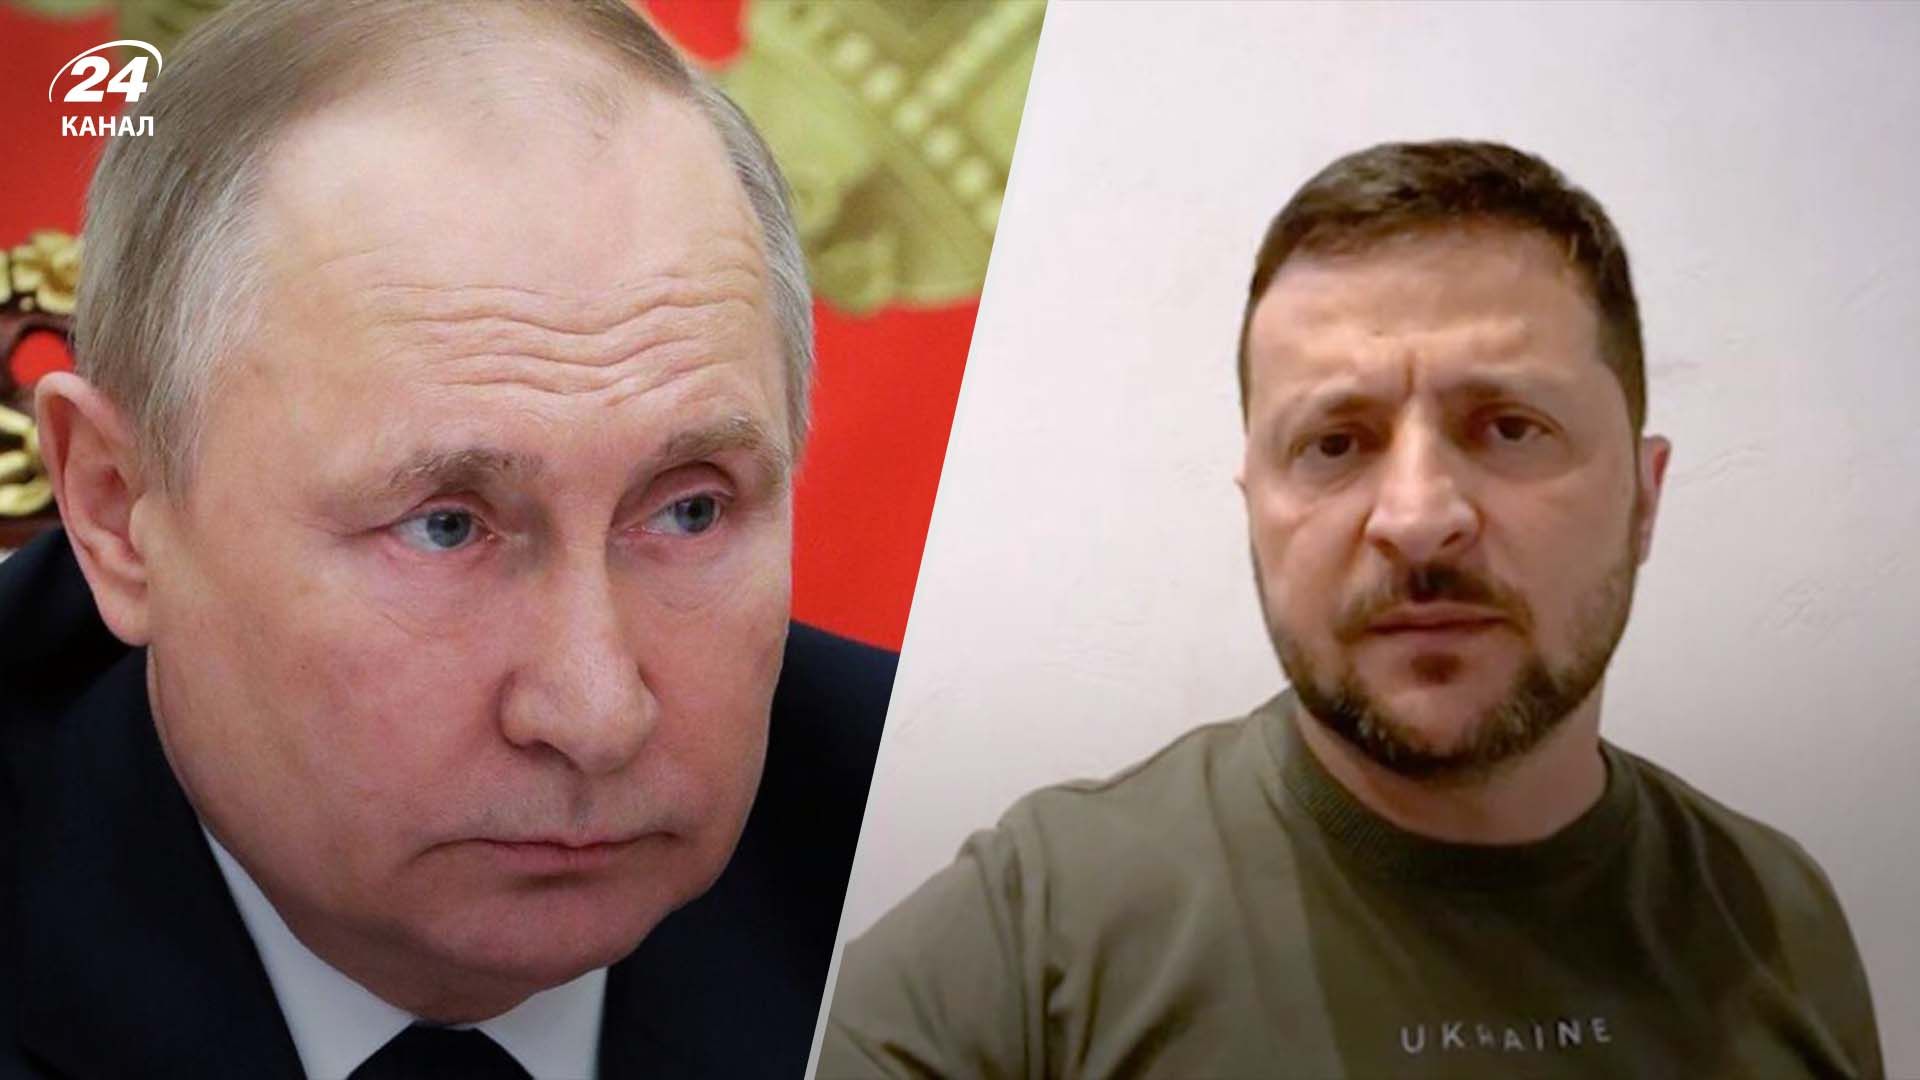 Зеленский назвал Путина фашистом и сравнил его с Гитлером